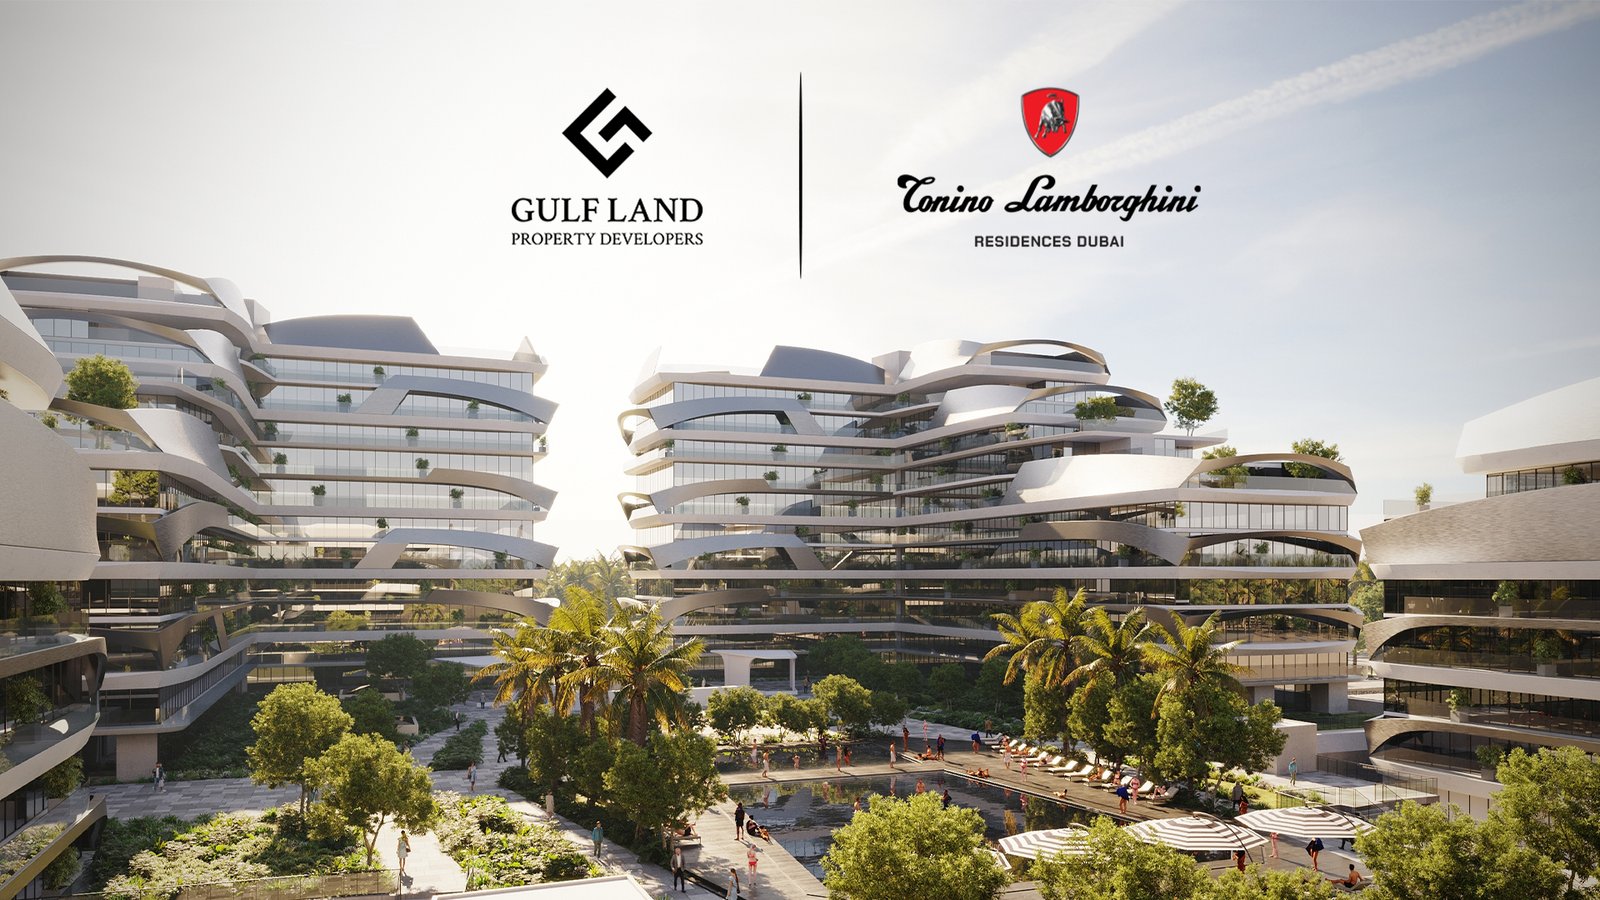 Tonino Lamborghini Residences Dubai